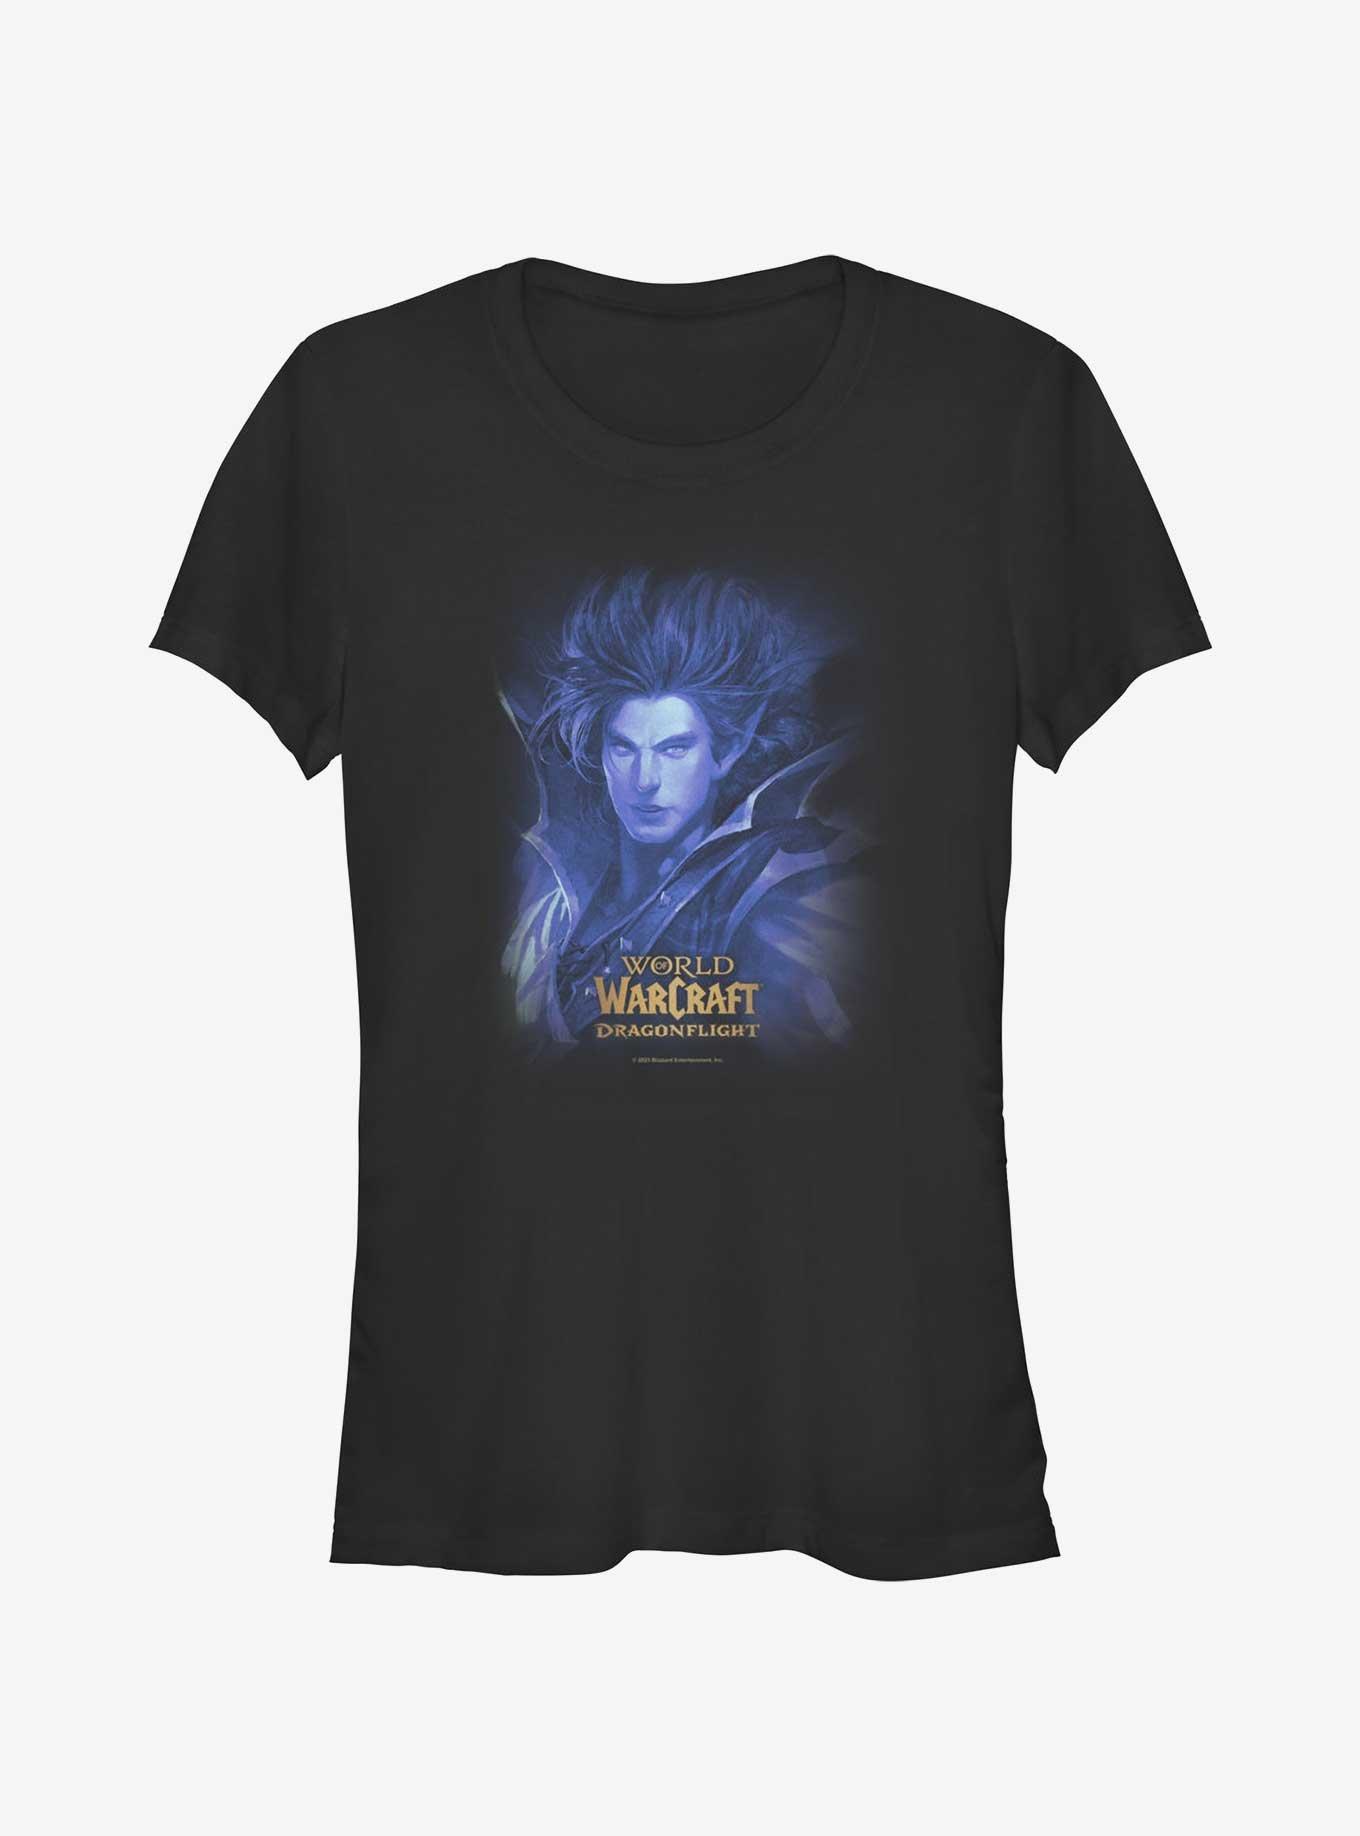 World Of Warcraft Kalecgos Ocean Girls T-Shirt, BLACK, hi-res